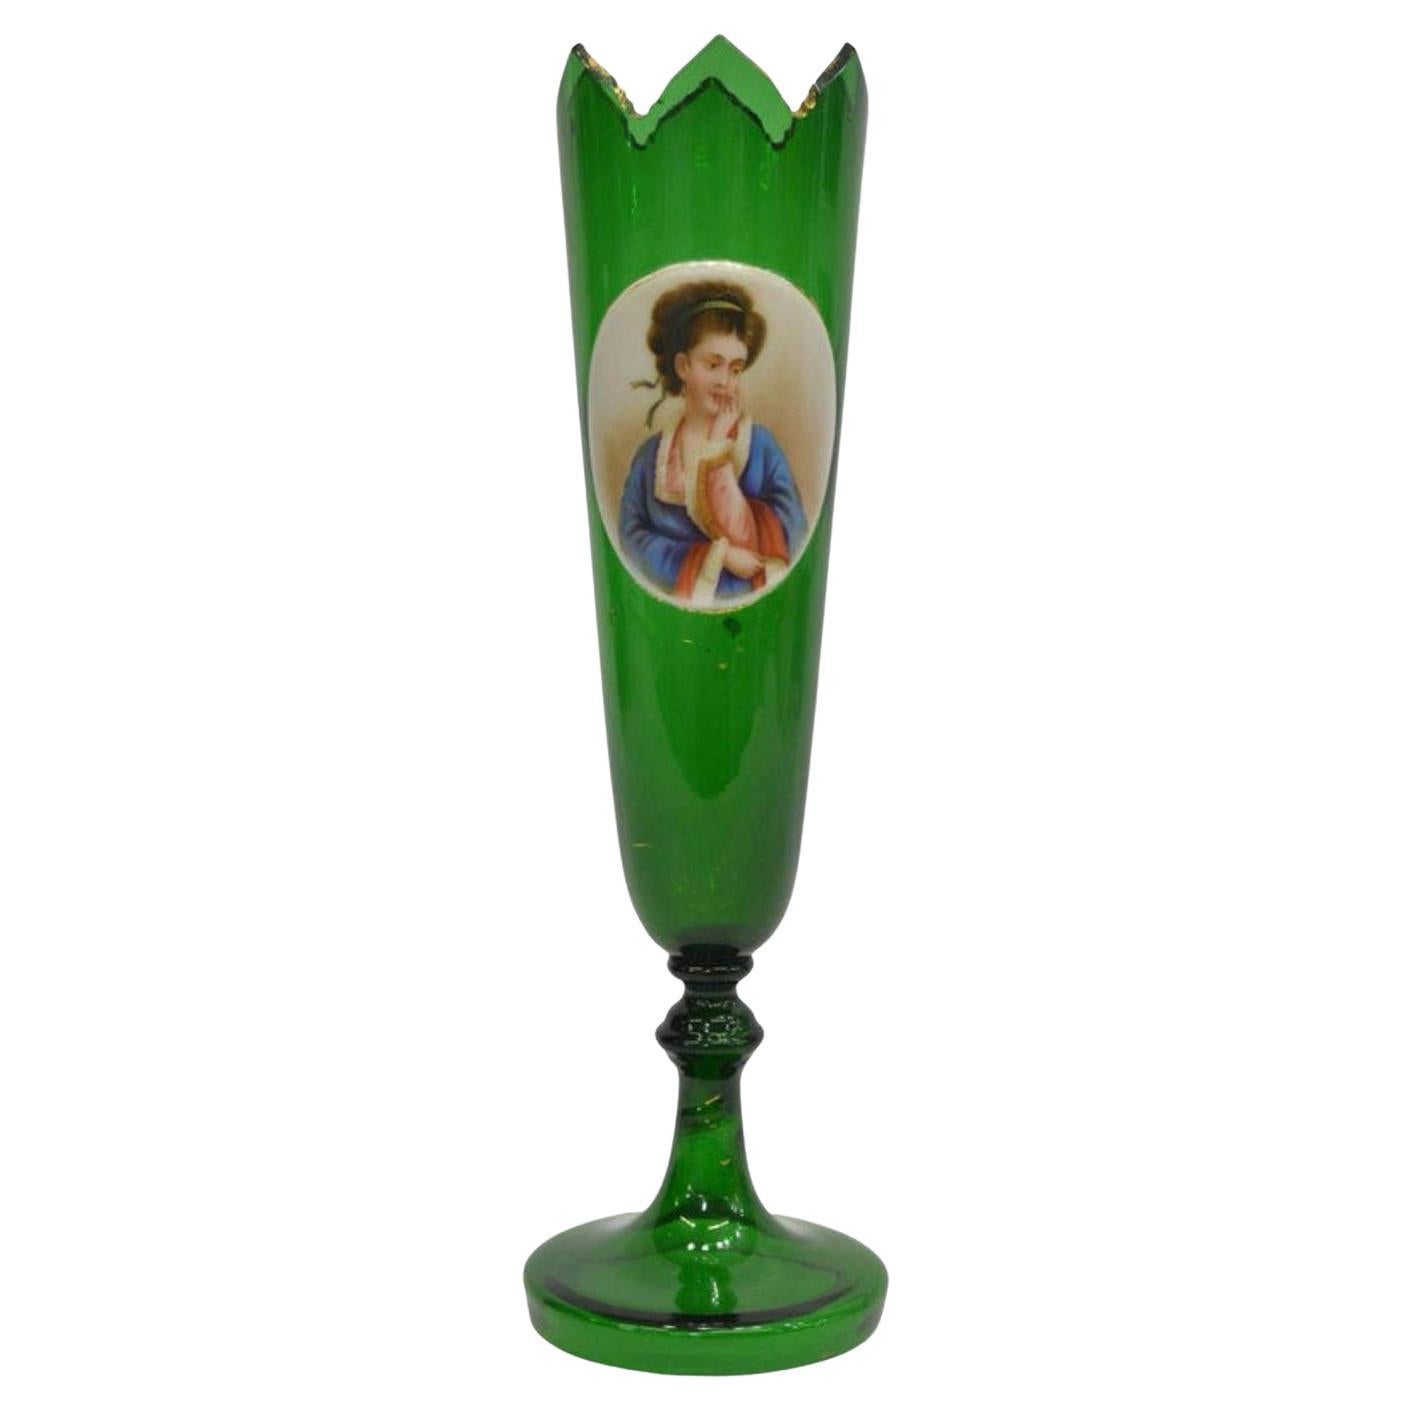 Grand vase en verre d'art vert doré de Bohème du 19ème siècle